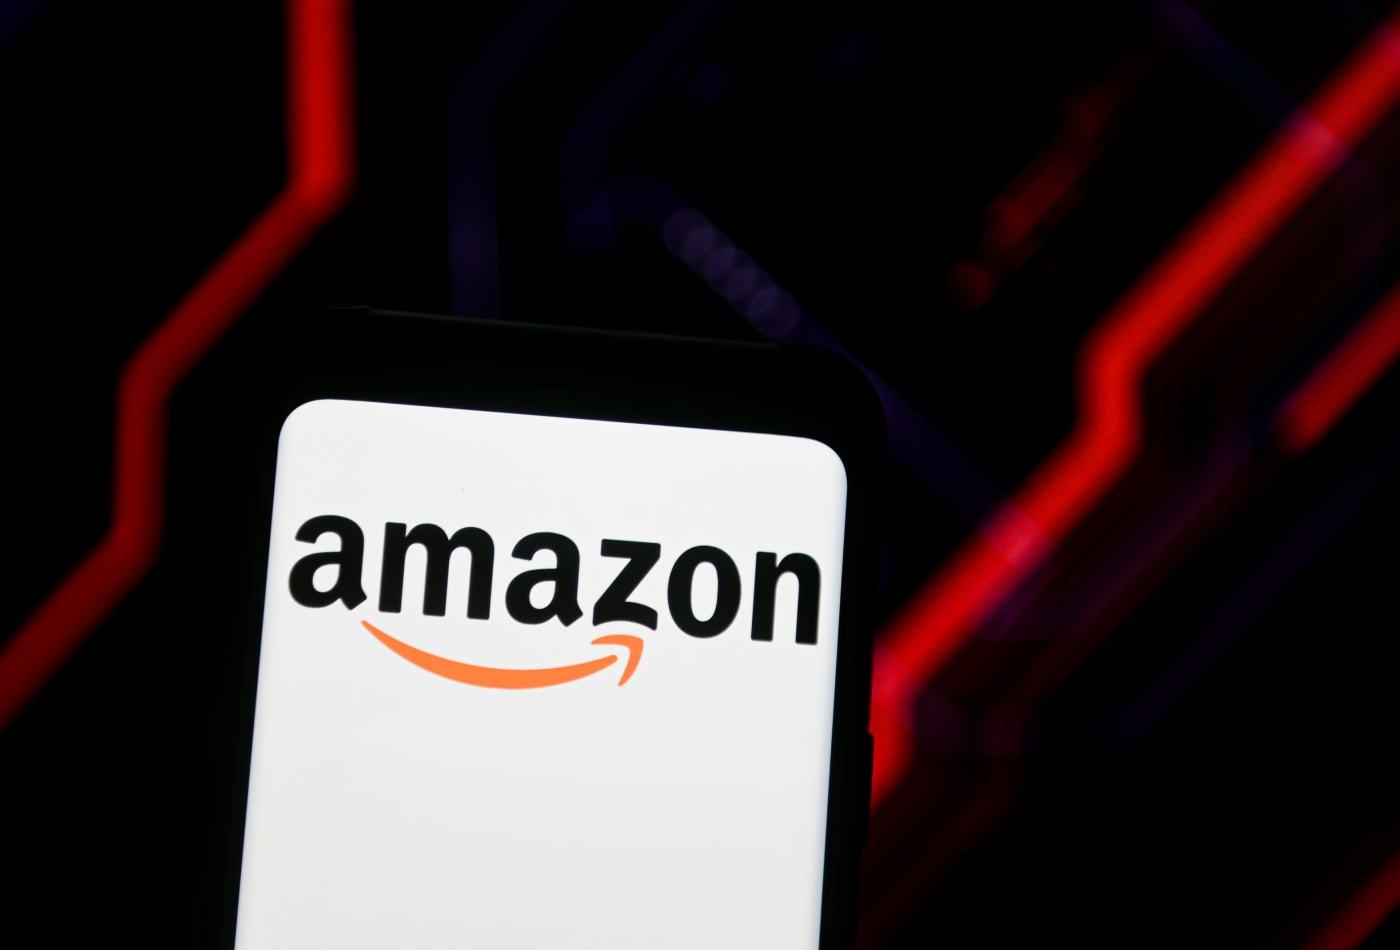 Amazon qua mặt Apple về giá trị thương hiệu